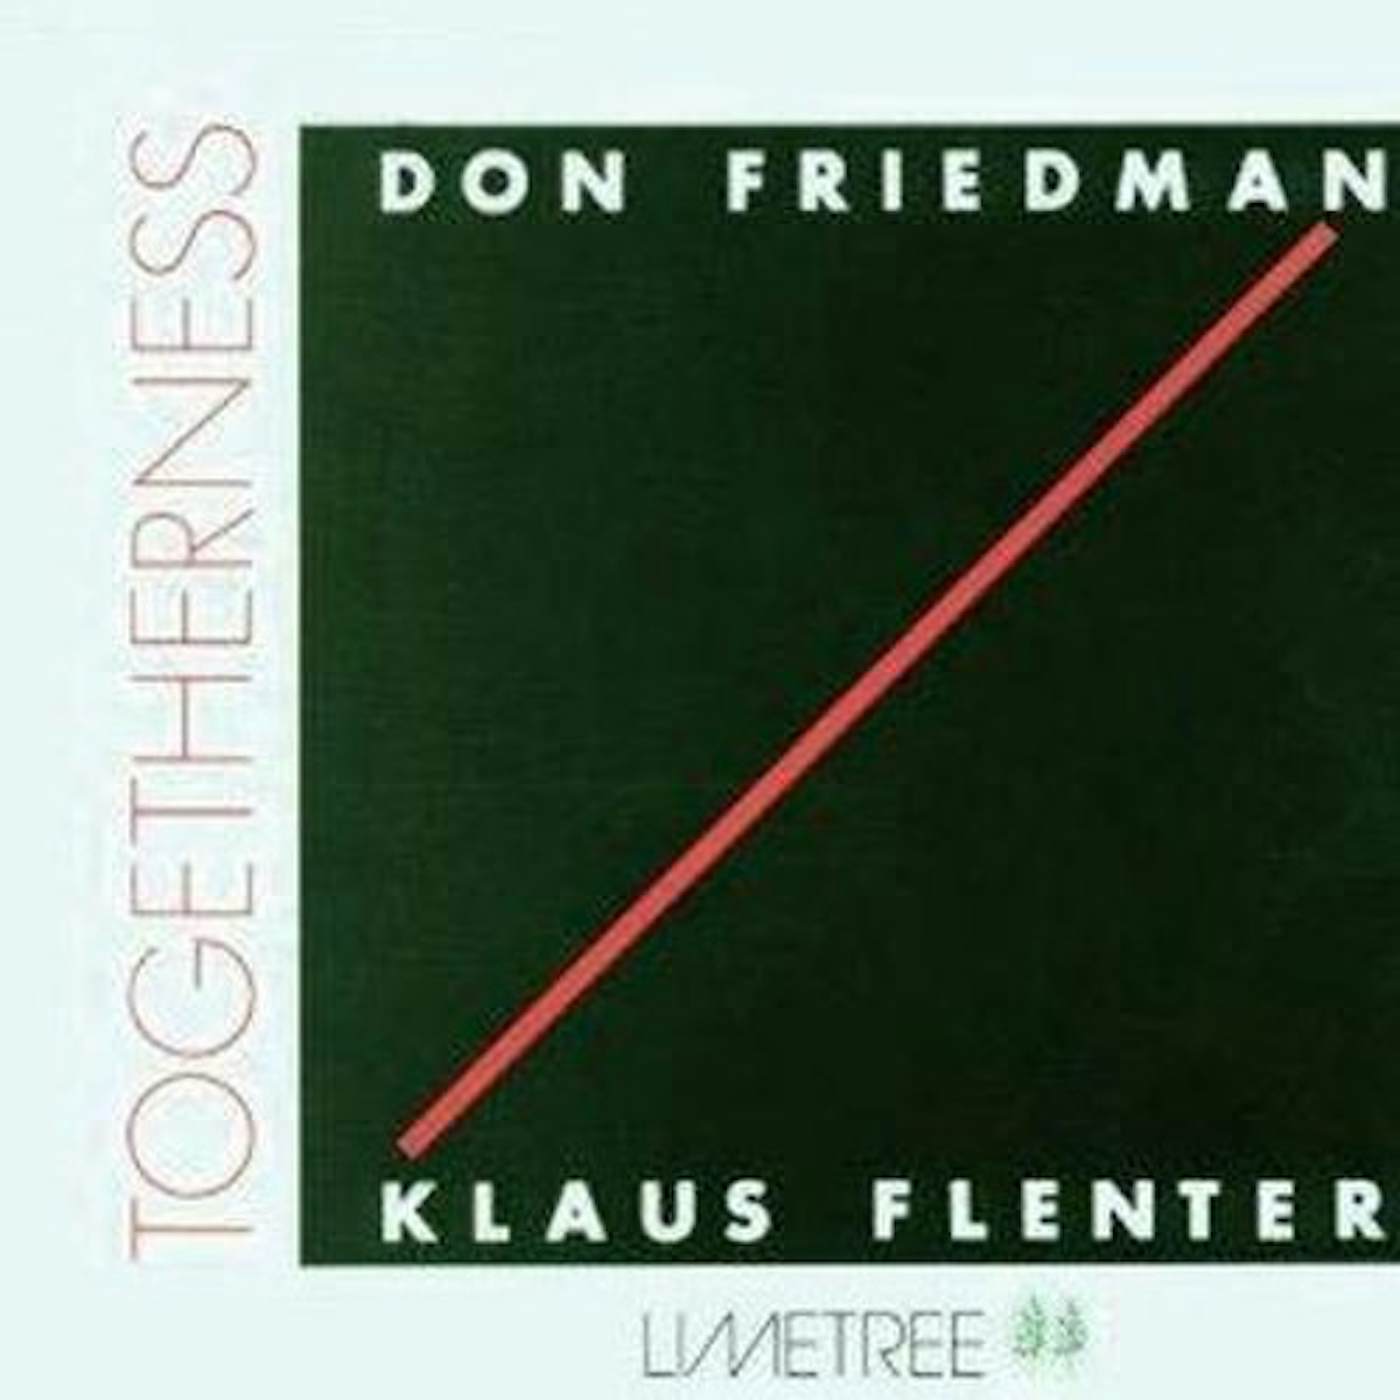 Don Friedman TOGETHERNESS: LIMITED CD